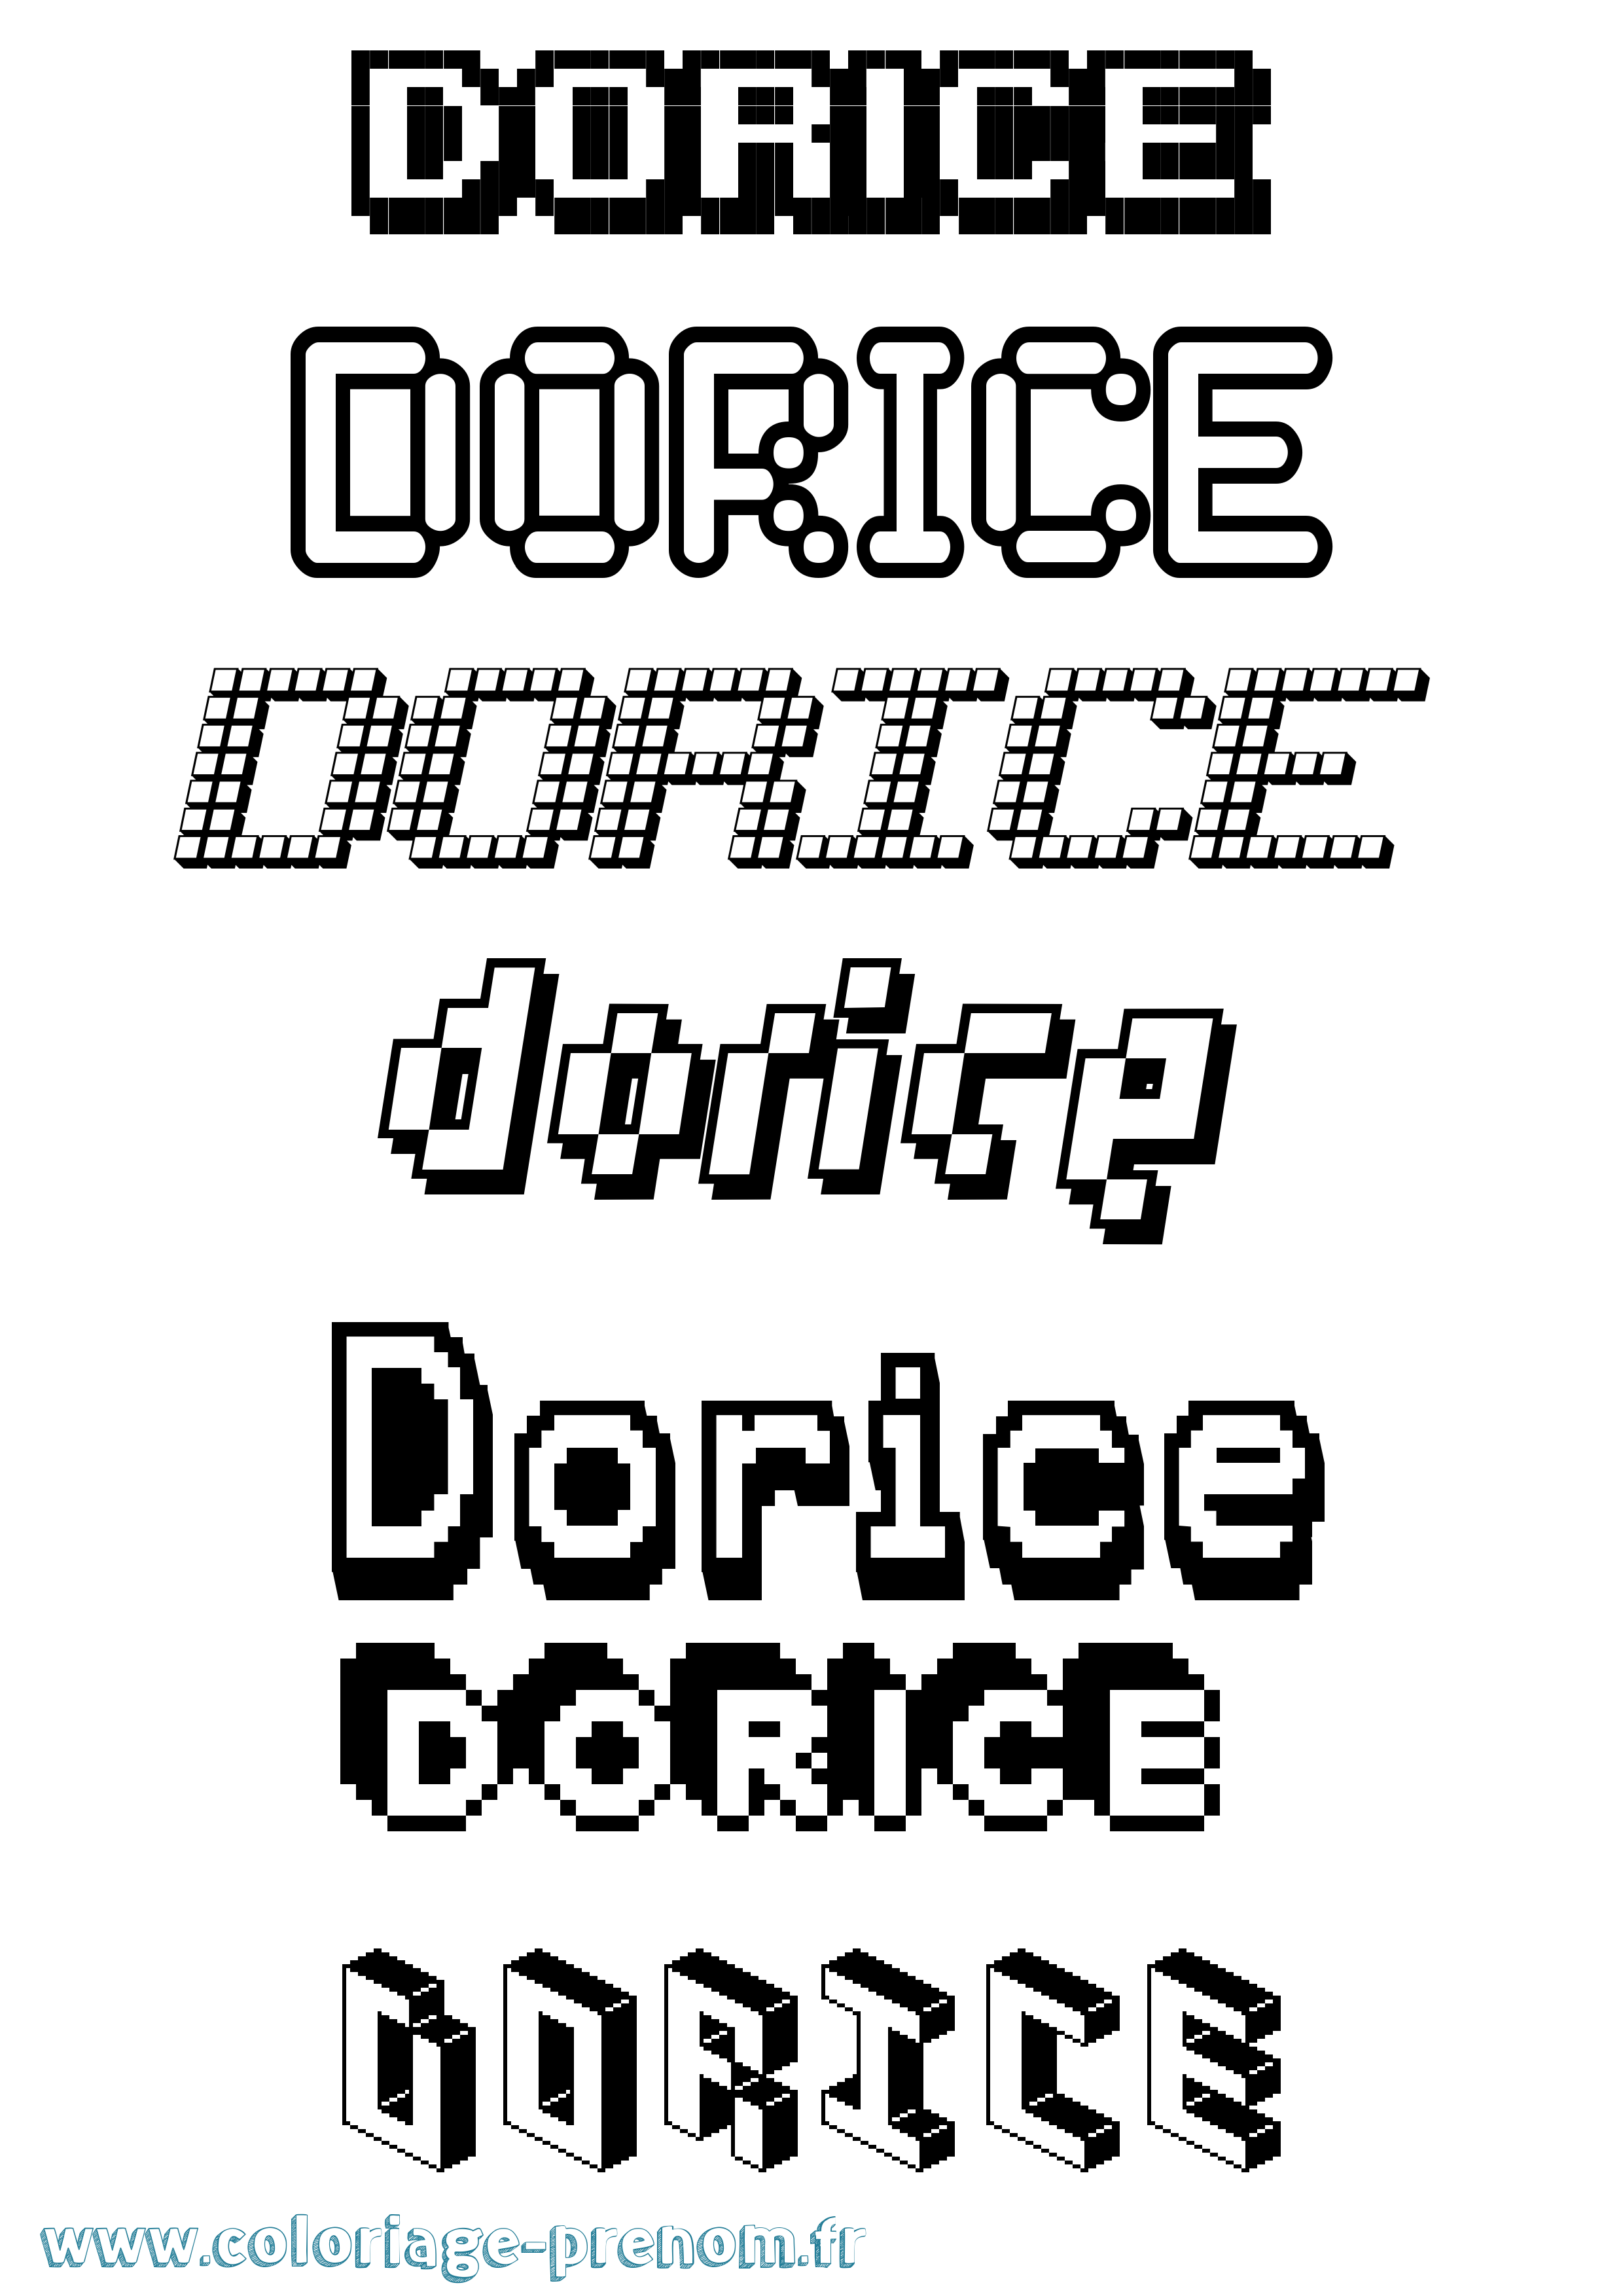 Coloriage prénom Dorice Pixel